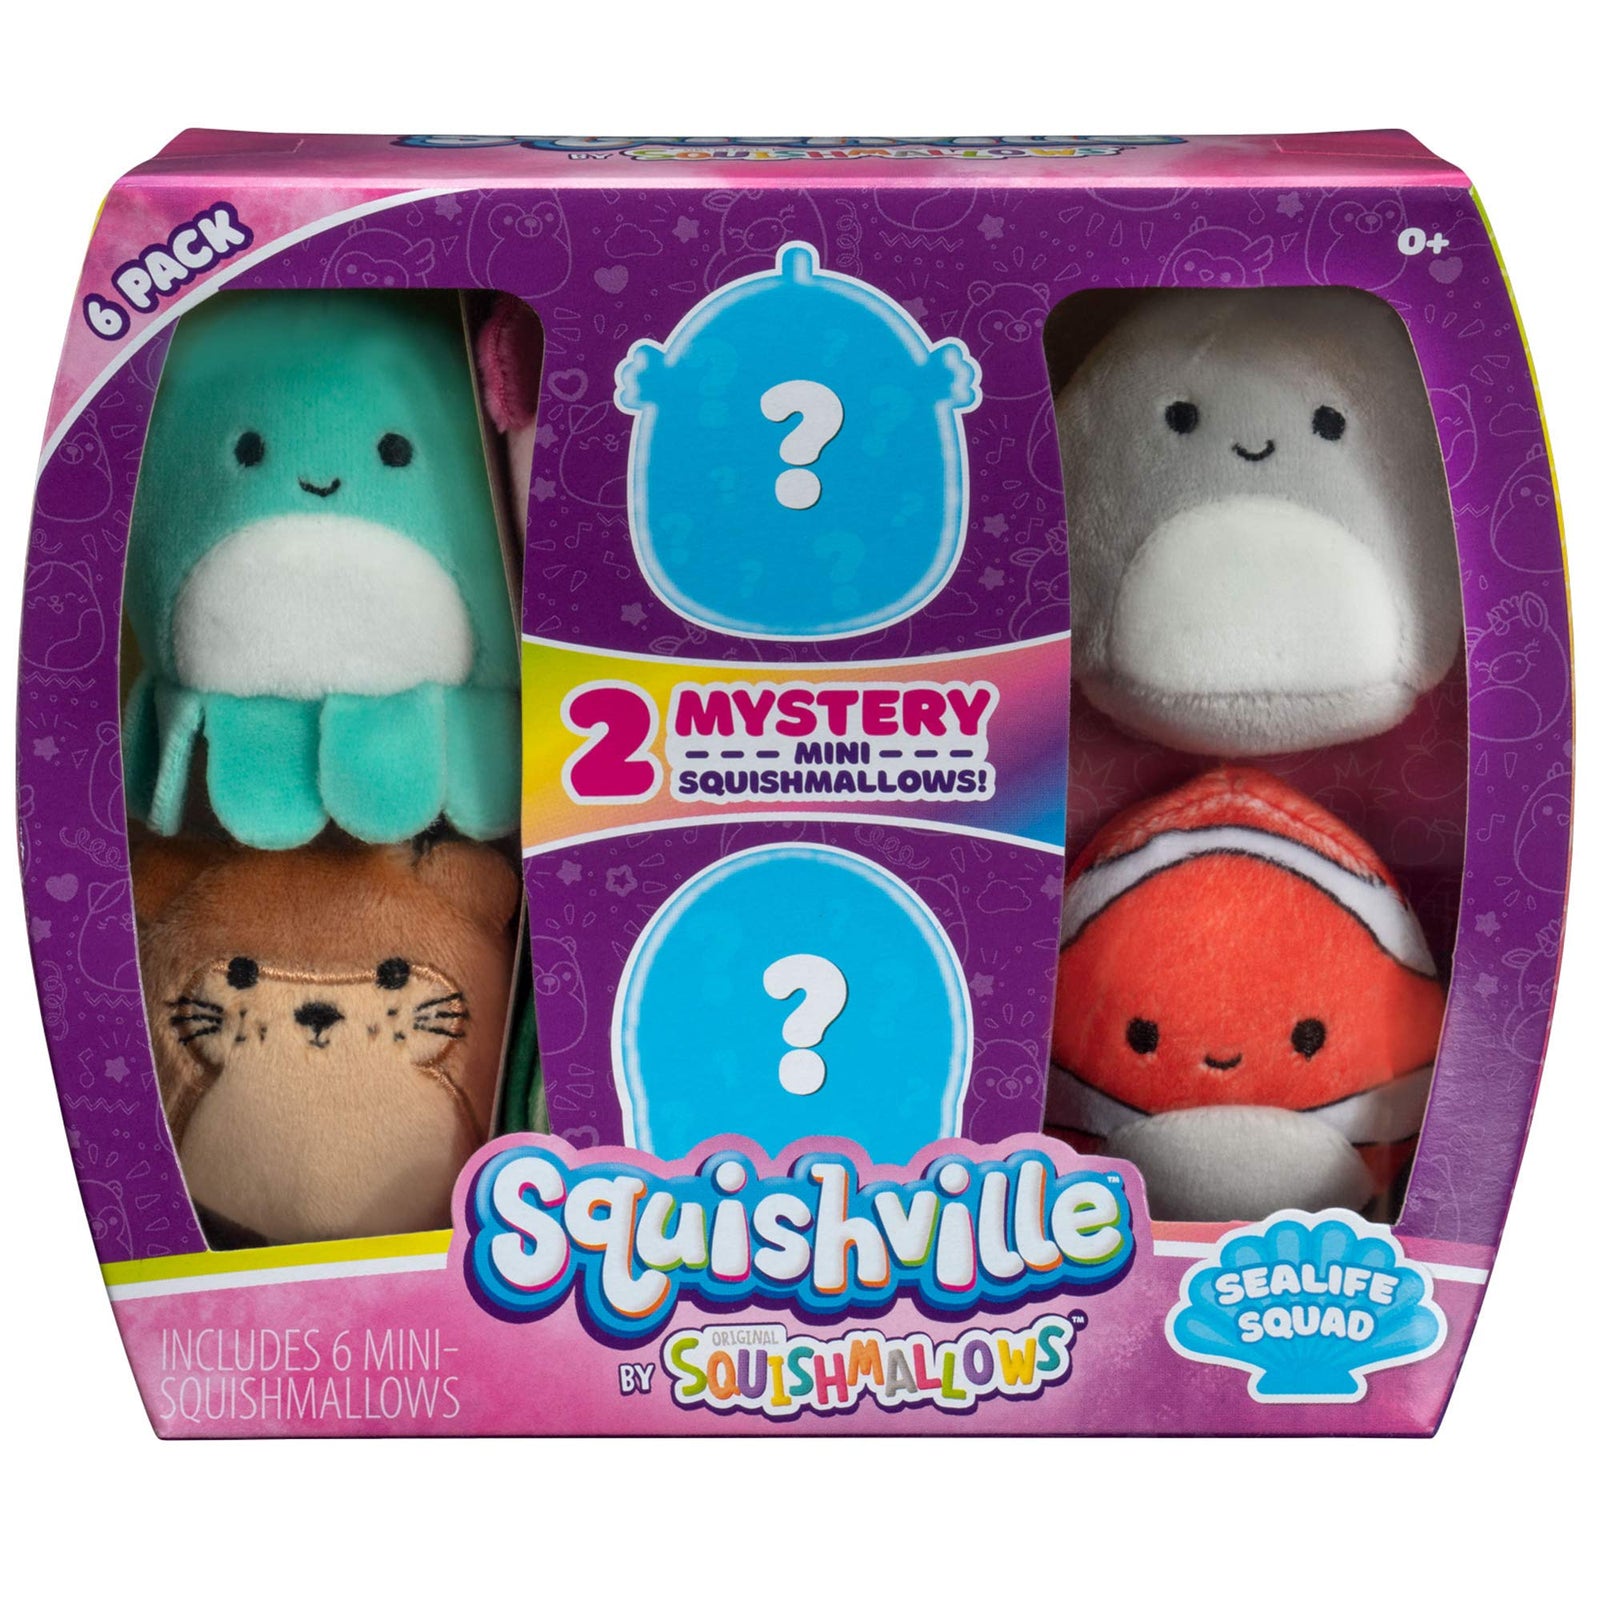 Squishville by Squishmallow Mini Plush Sealife Squad, Six 2” Soft Mini-Squishmallow Sea Animals, Irresistebly Soft Colorful Plush, Mini Shark, Otter, and Seahorse Squishmallows